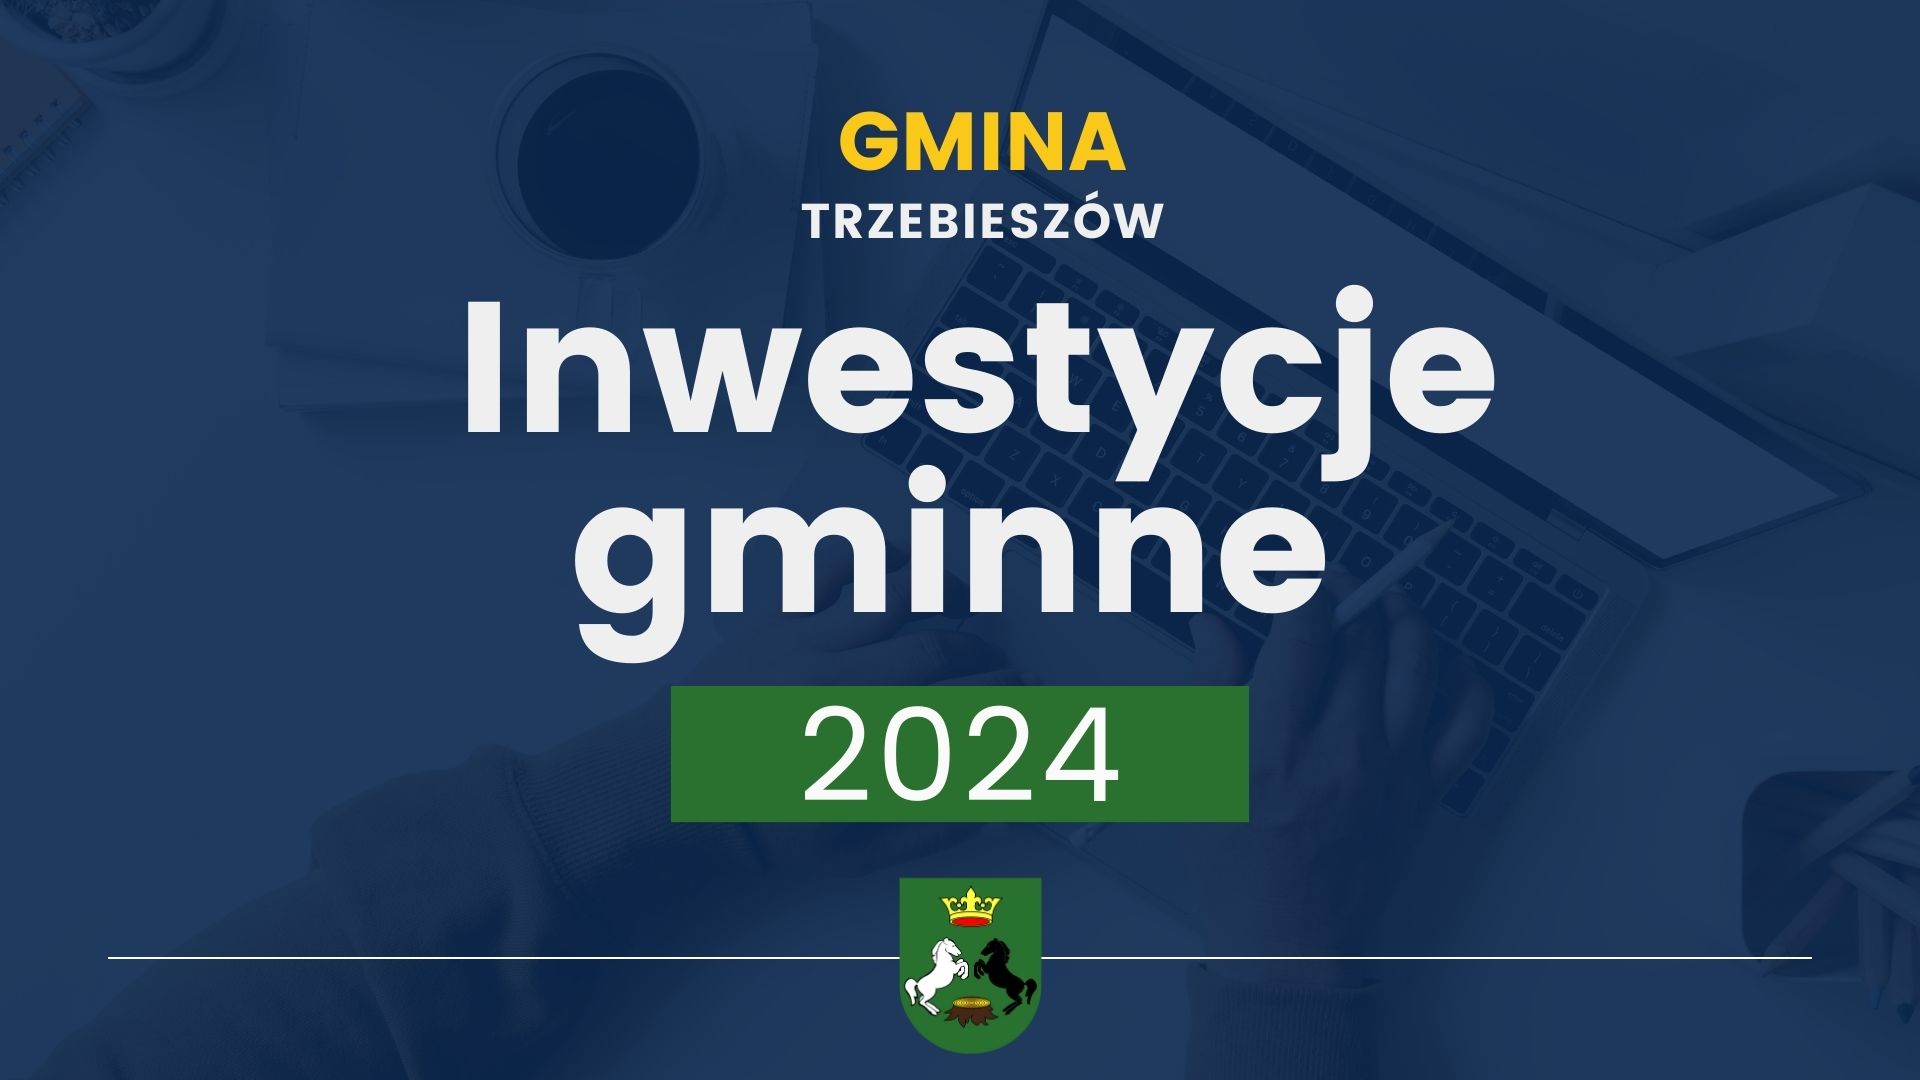 Inwestycje gminne w 2024 roku